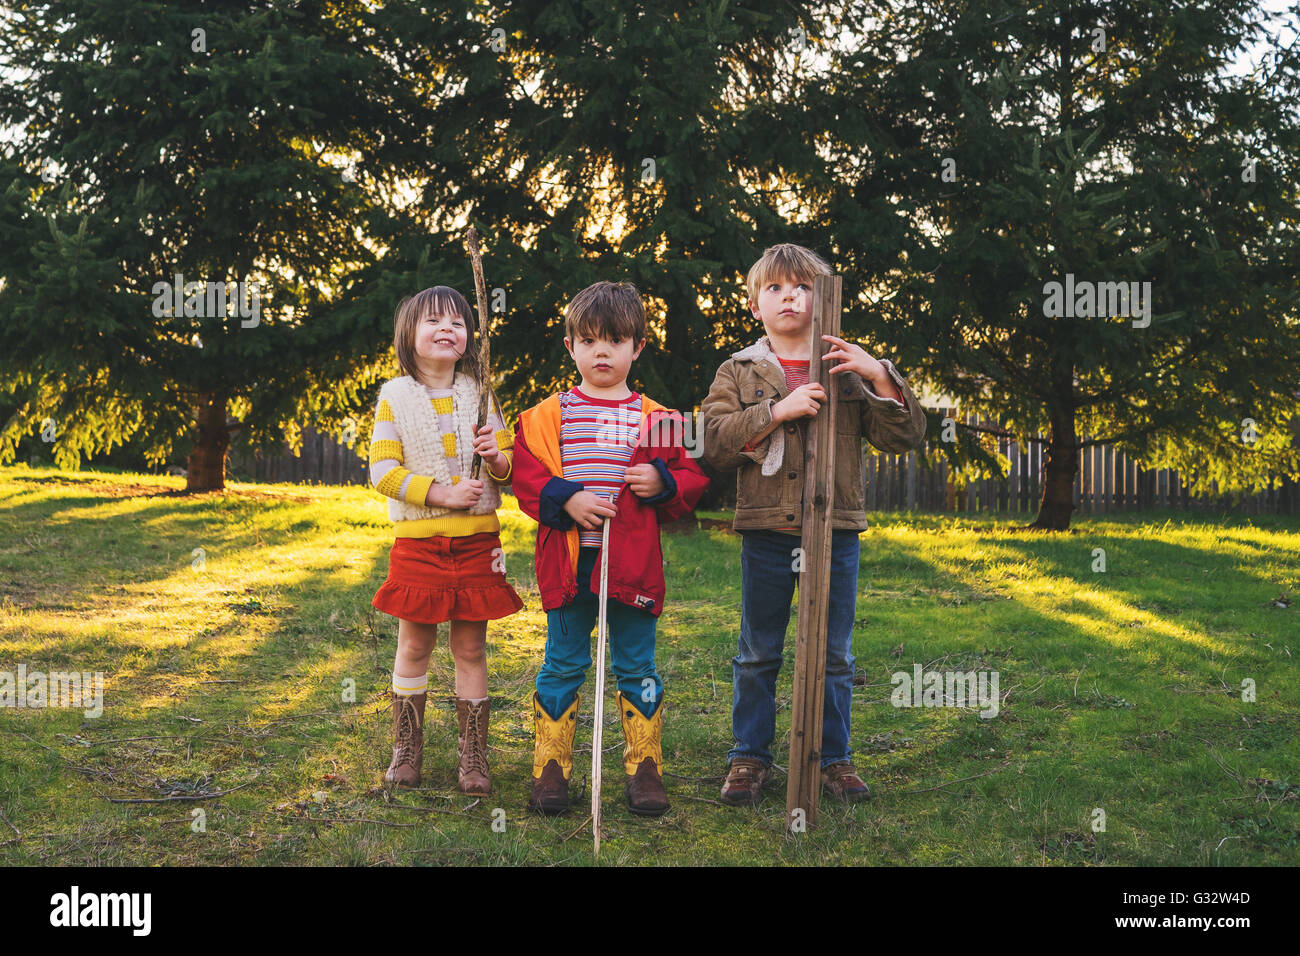 Trois enfants standing in garden holding sticks Banque D'Images